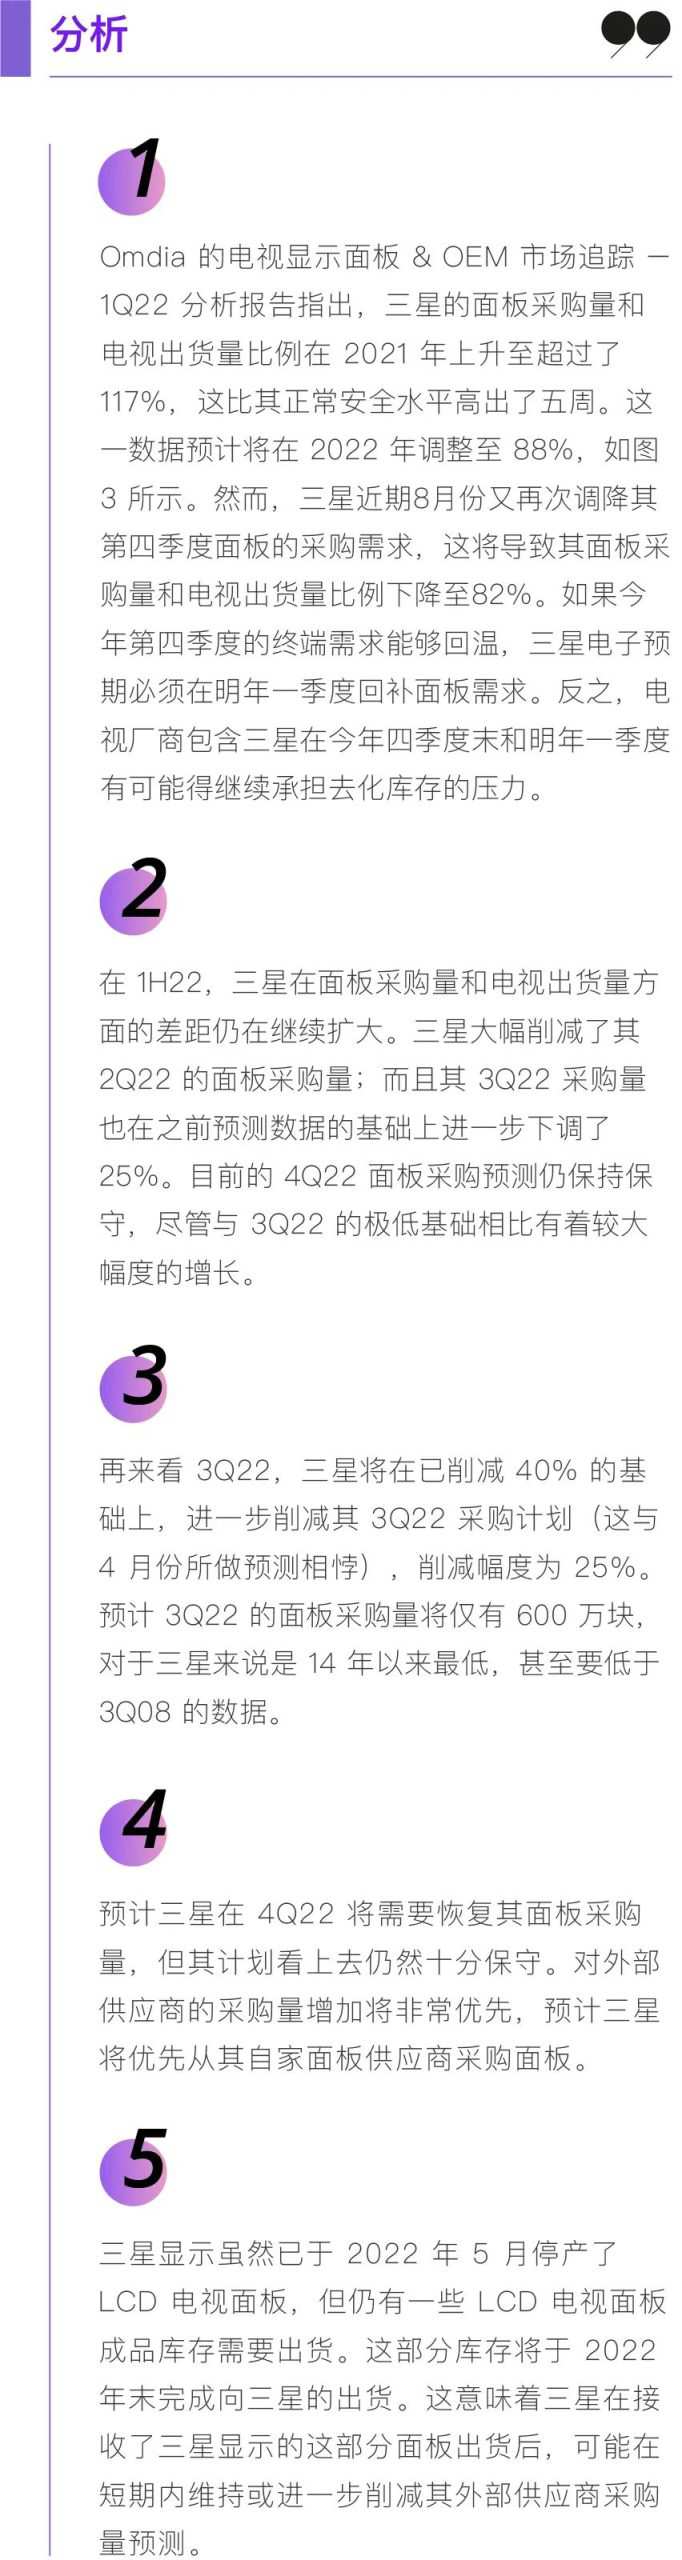 中国显示产业大会「2021世界显示产业大会议题」